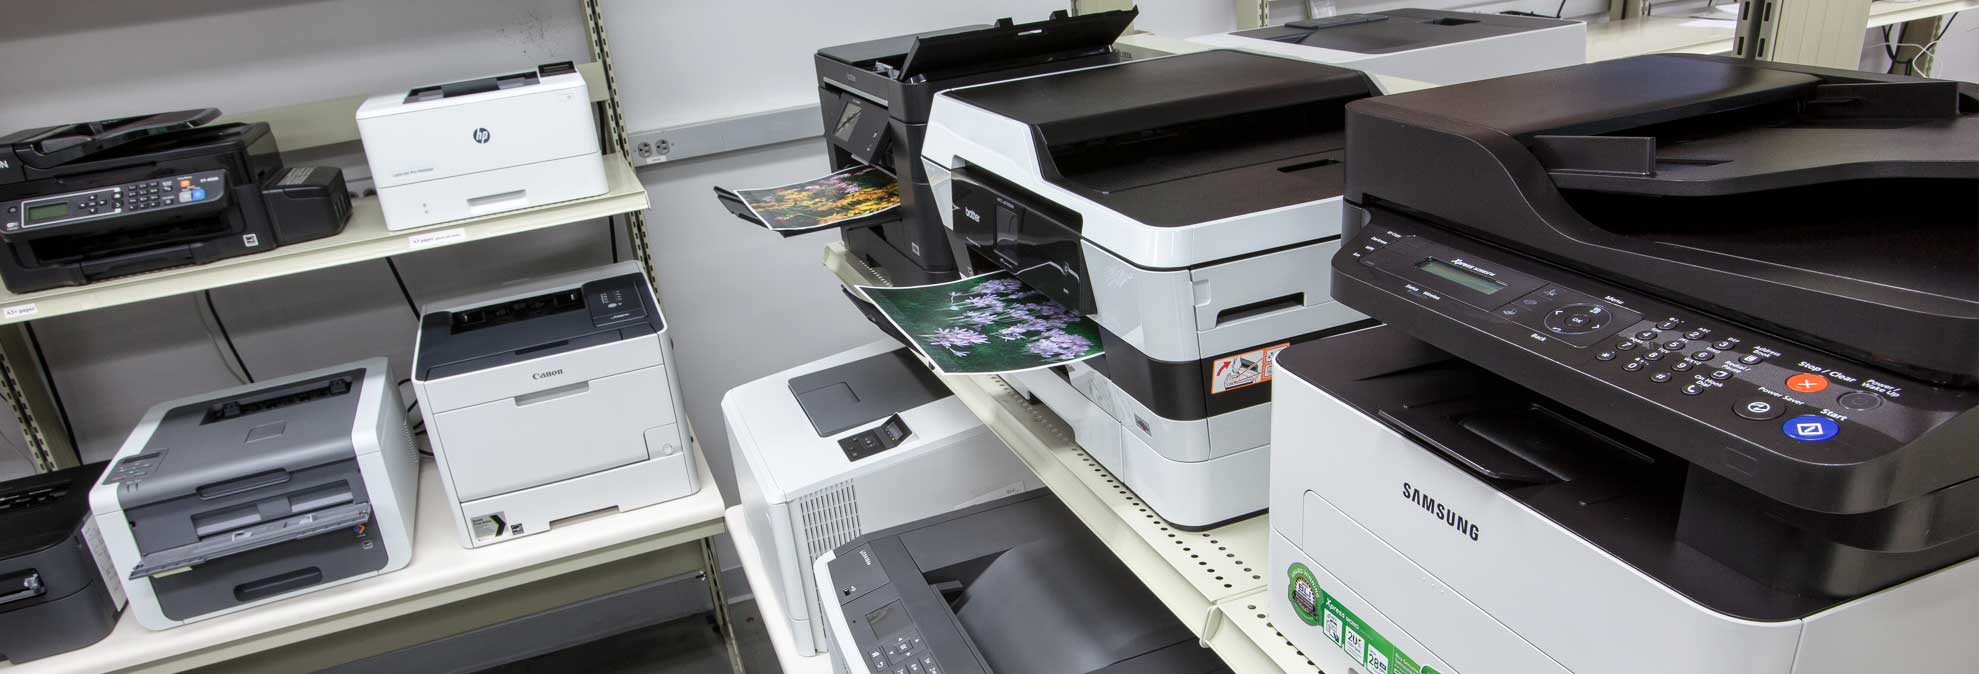 Ce sunt imprimantele si la ce folosesc ele